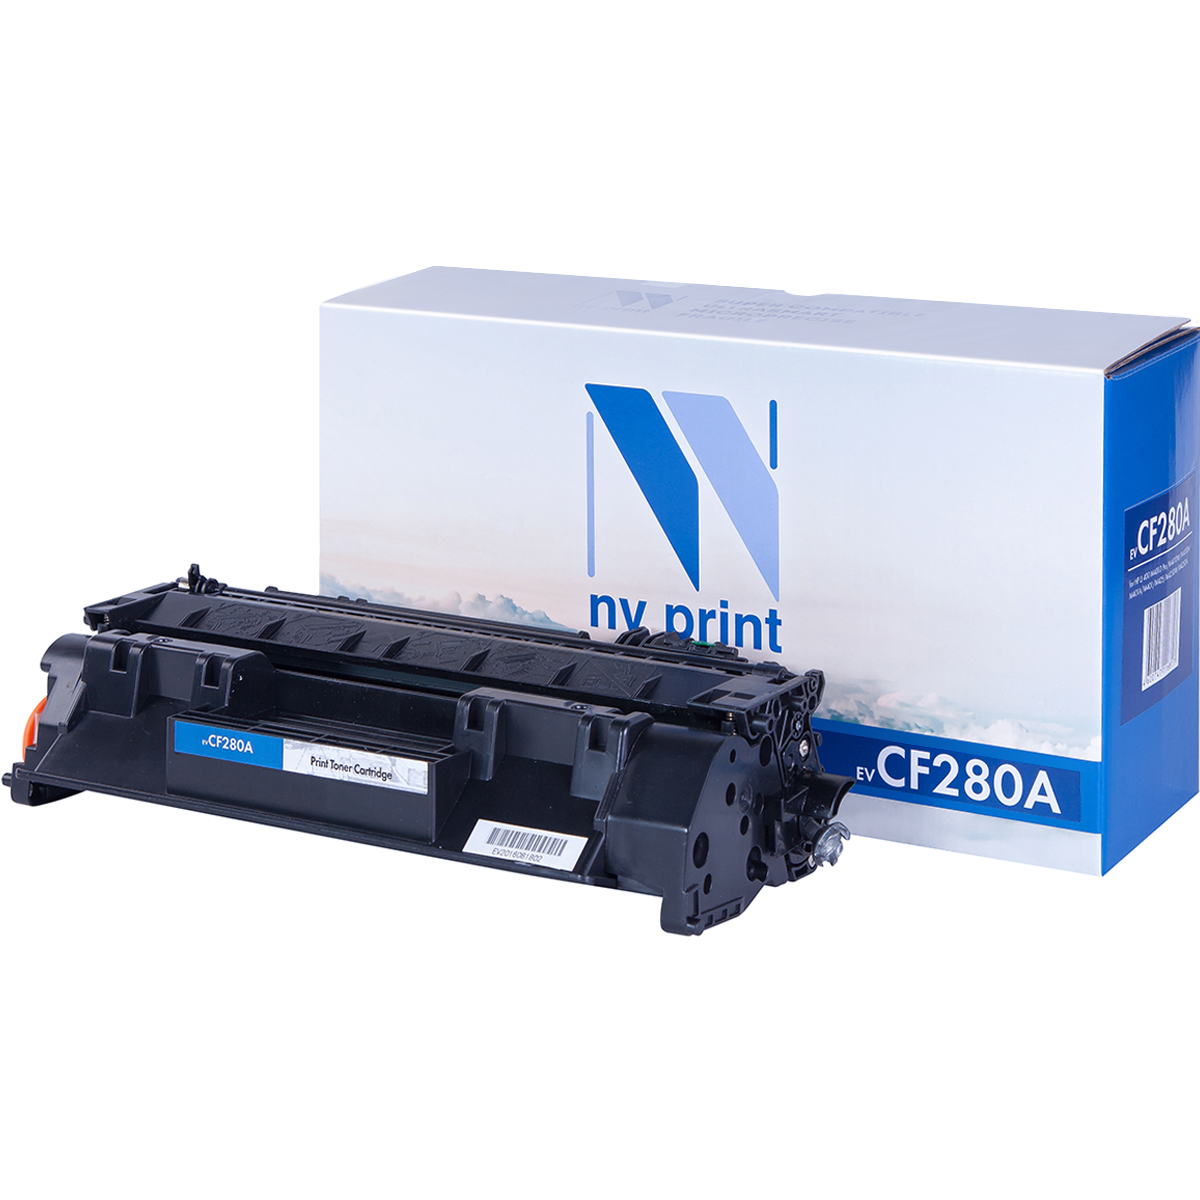 Картридж лазерный NV Print NV-CF280A (HP LaserJet Pro M401d, M401dn, M401dw, M401a, M401dne, MFP-M425dw, M425dn, P2035, P2035n, P2055, P2055d, P2055dn, P2055d, 2700стр.)